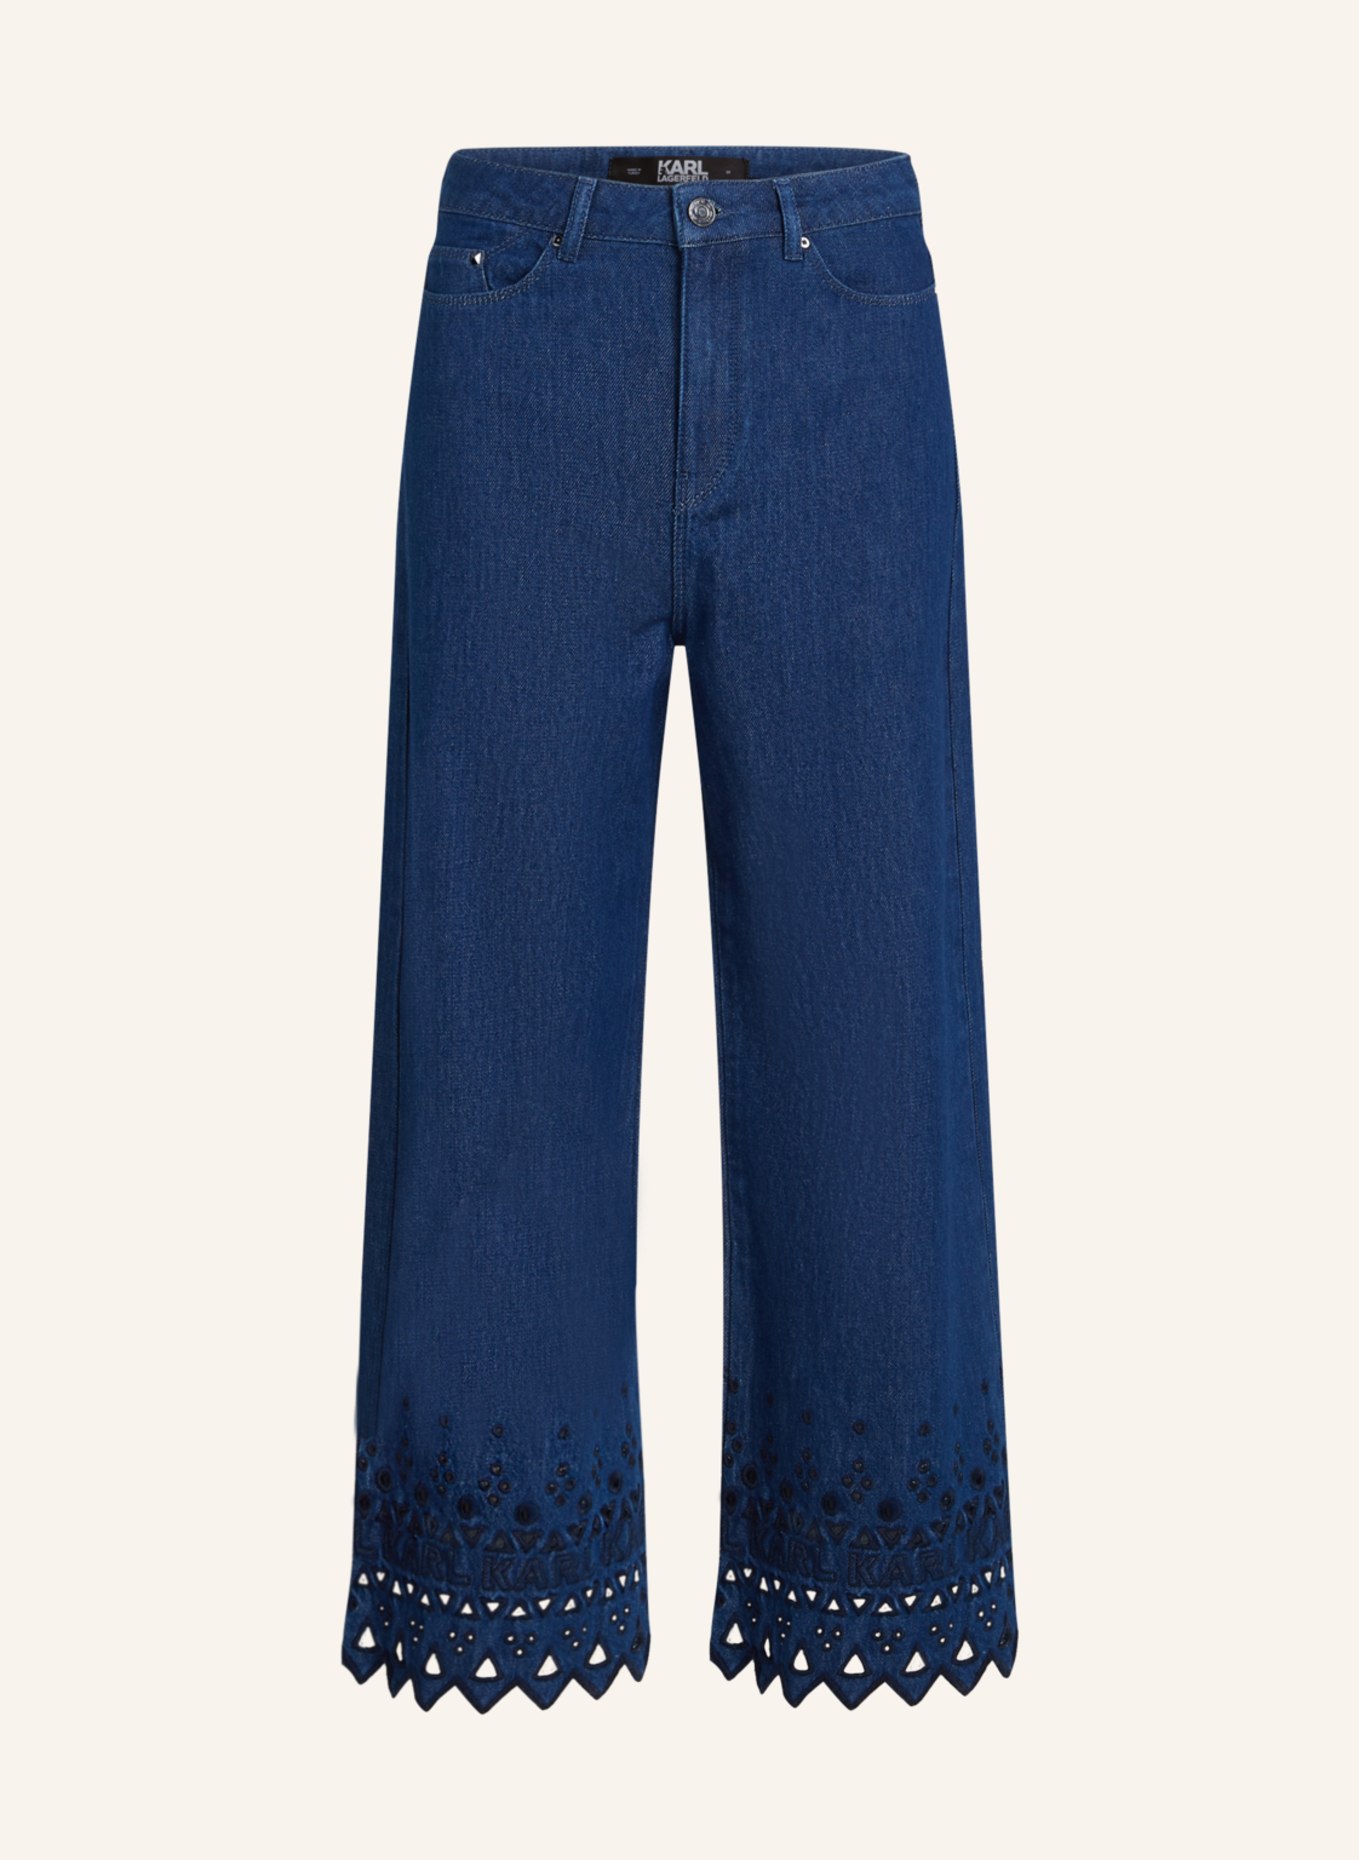 KARL LAGERFELD Jeans, Farbe: BLAU (Bild 1)